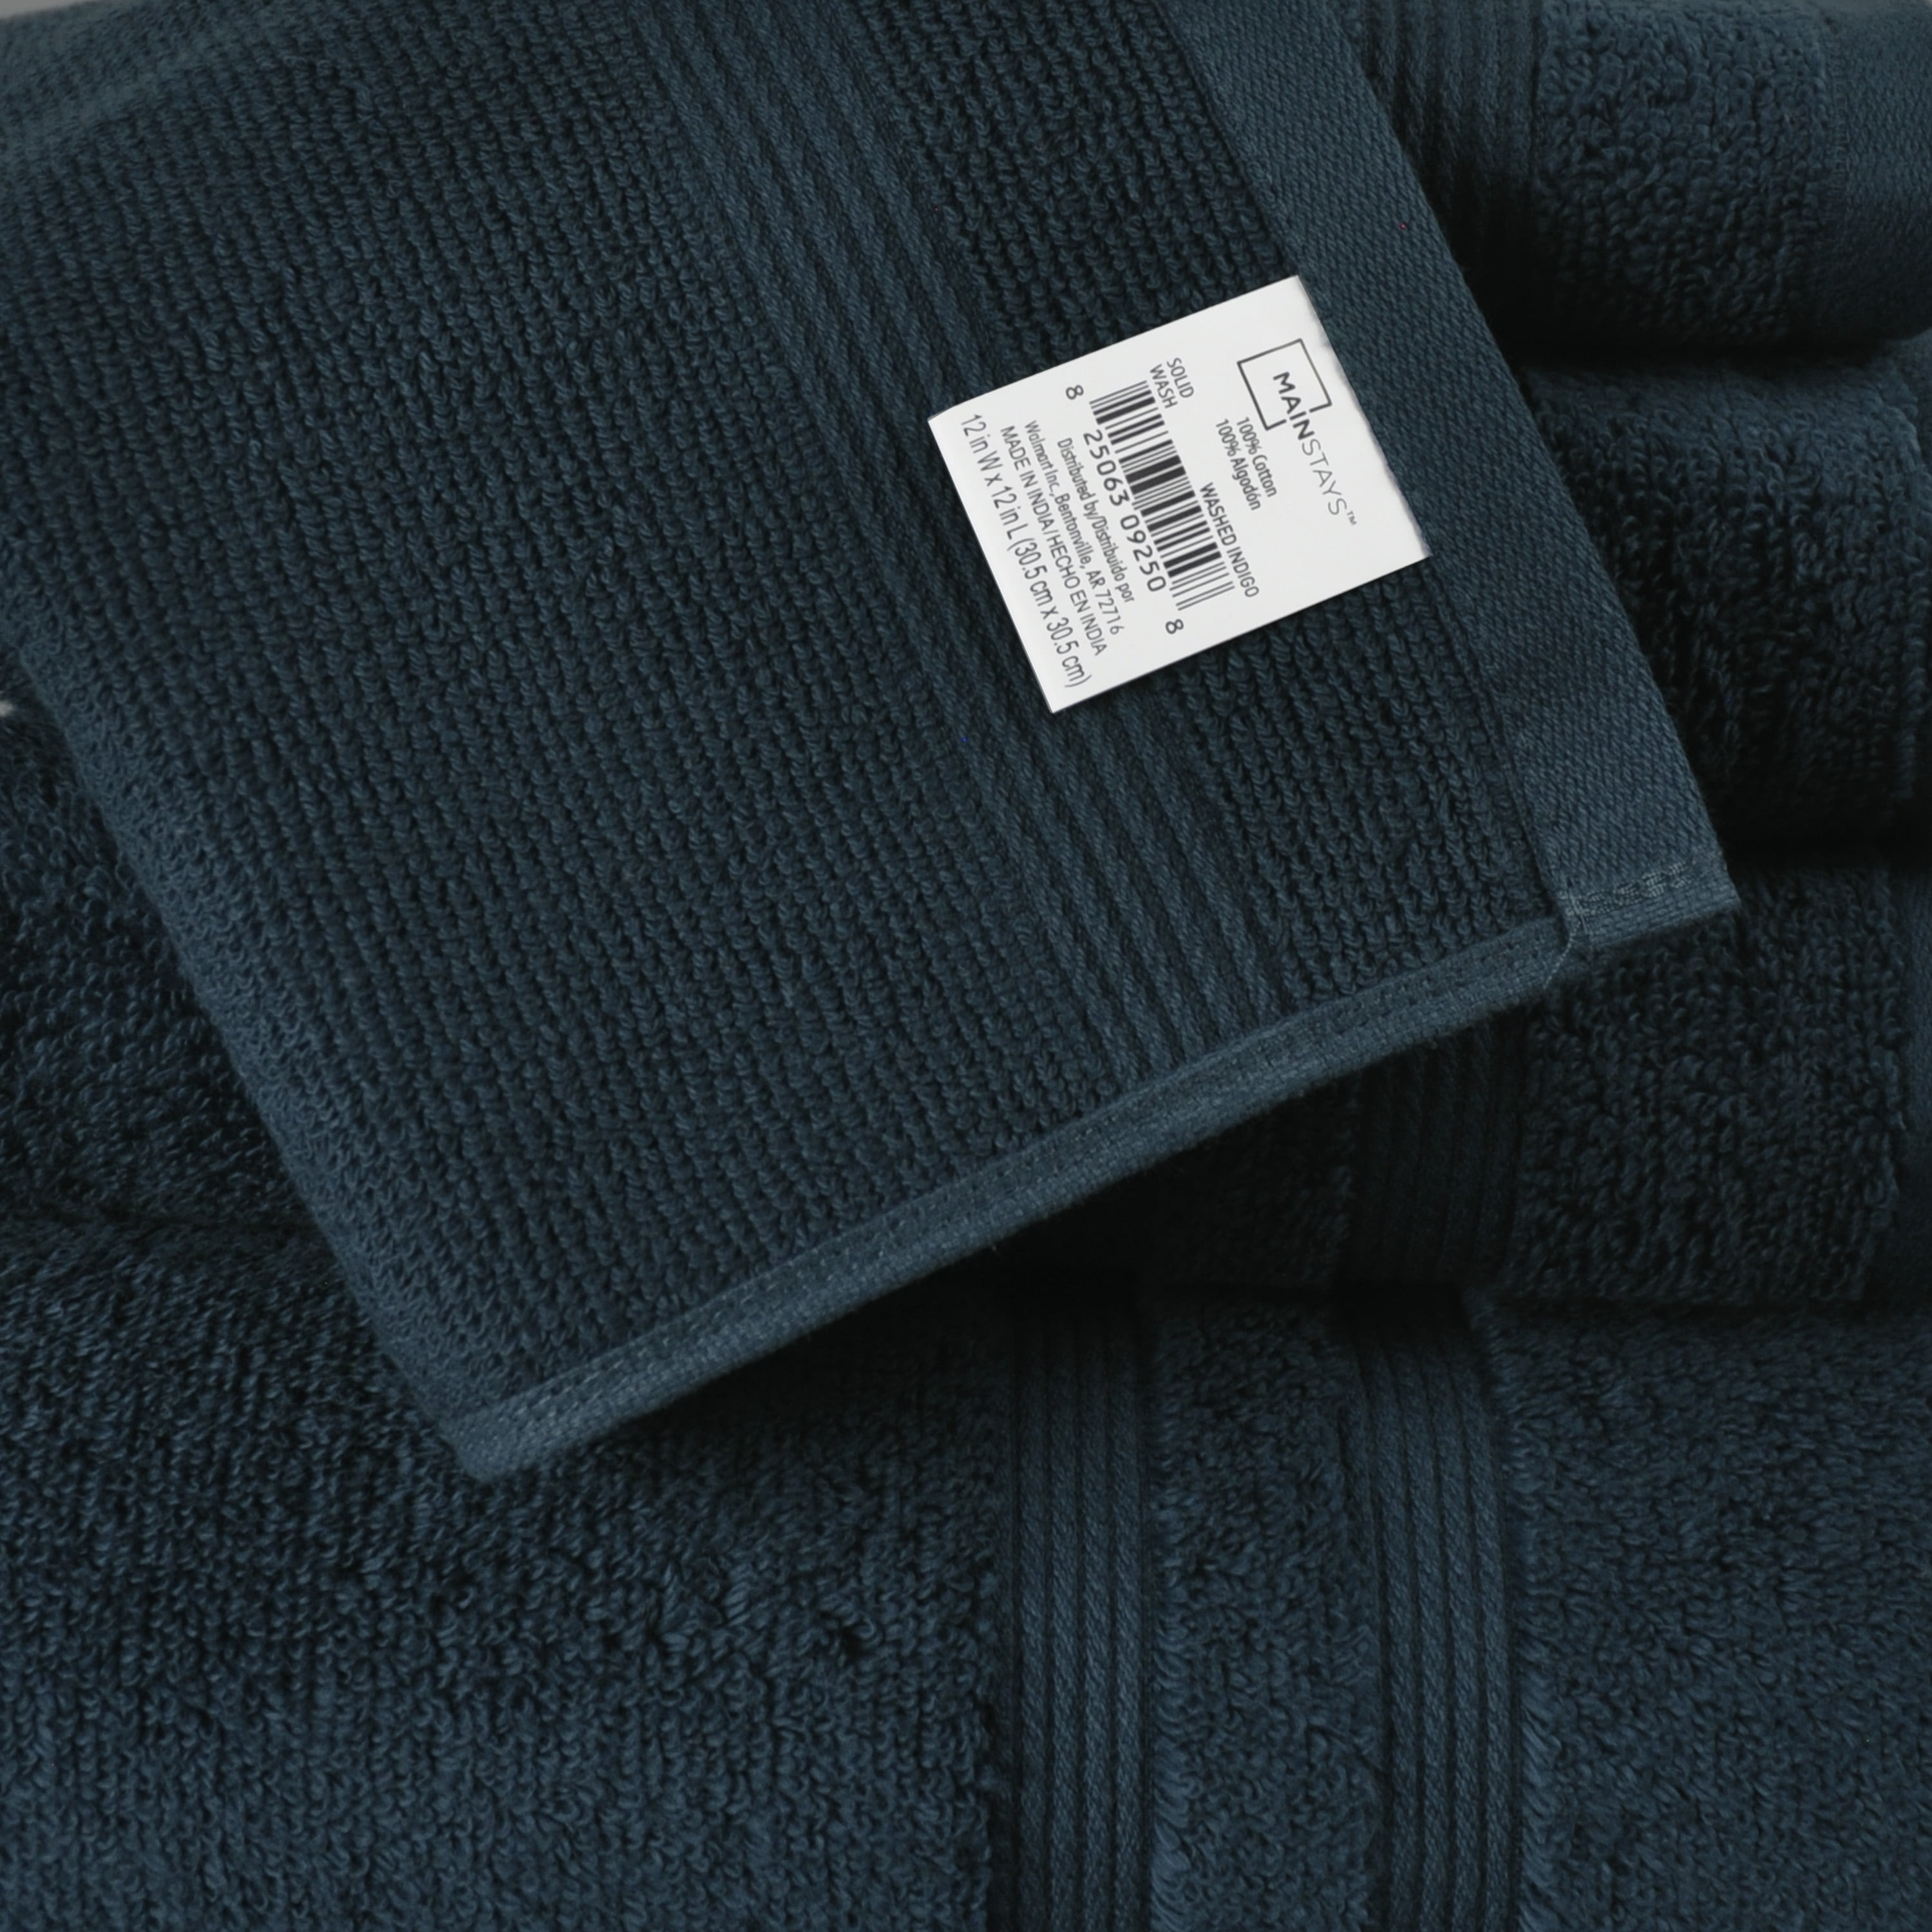 Wholesale 16 x 26 Assorted colors Hand Towel (36 pcs) - Alpha Cotton